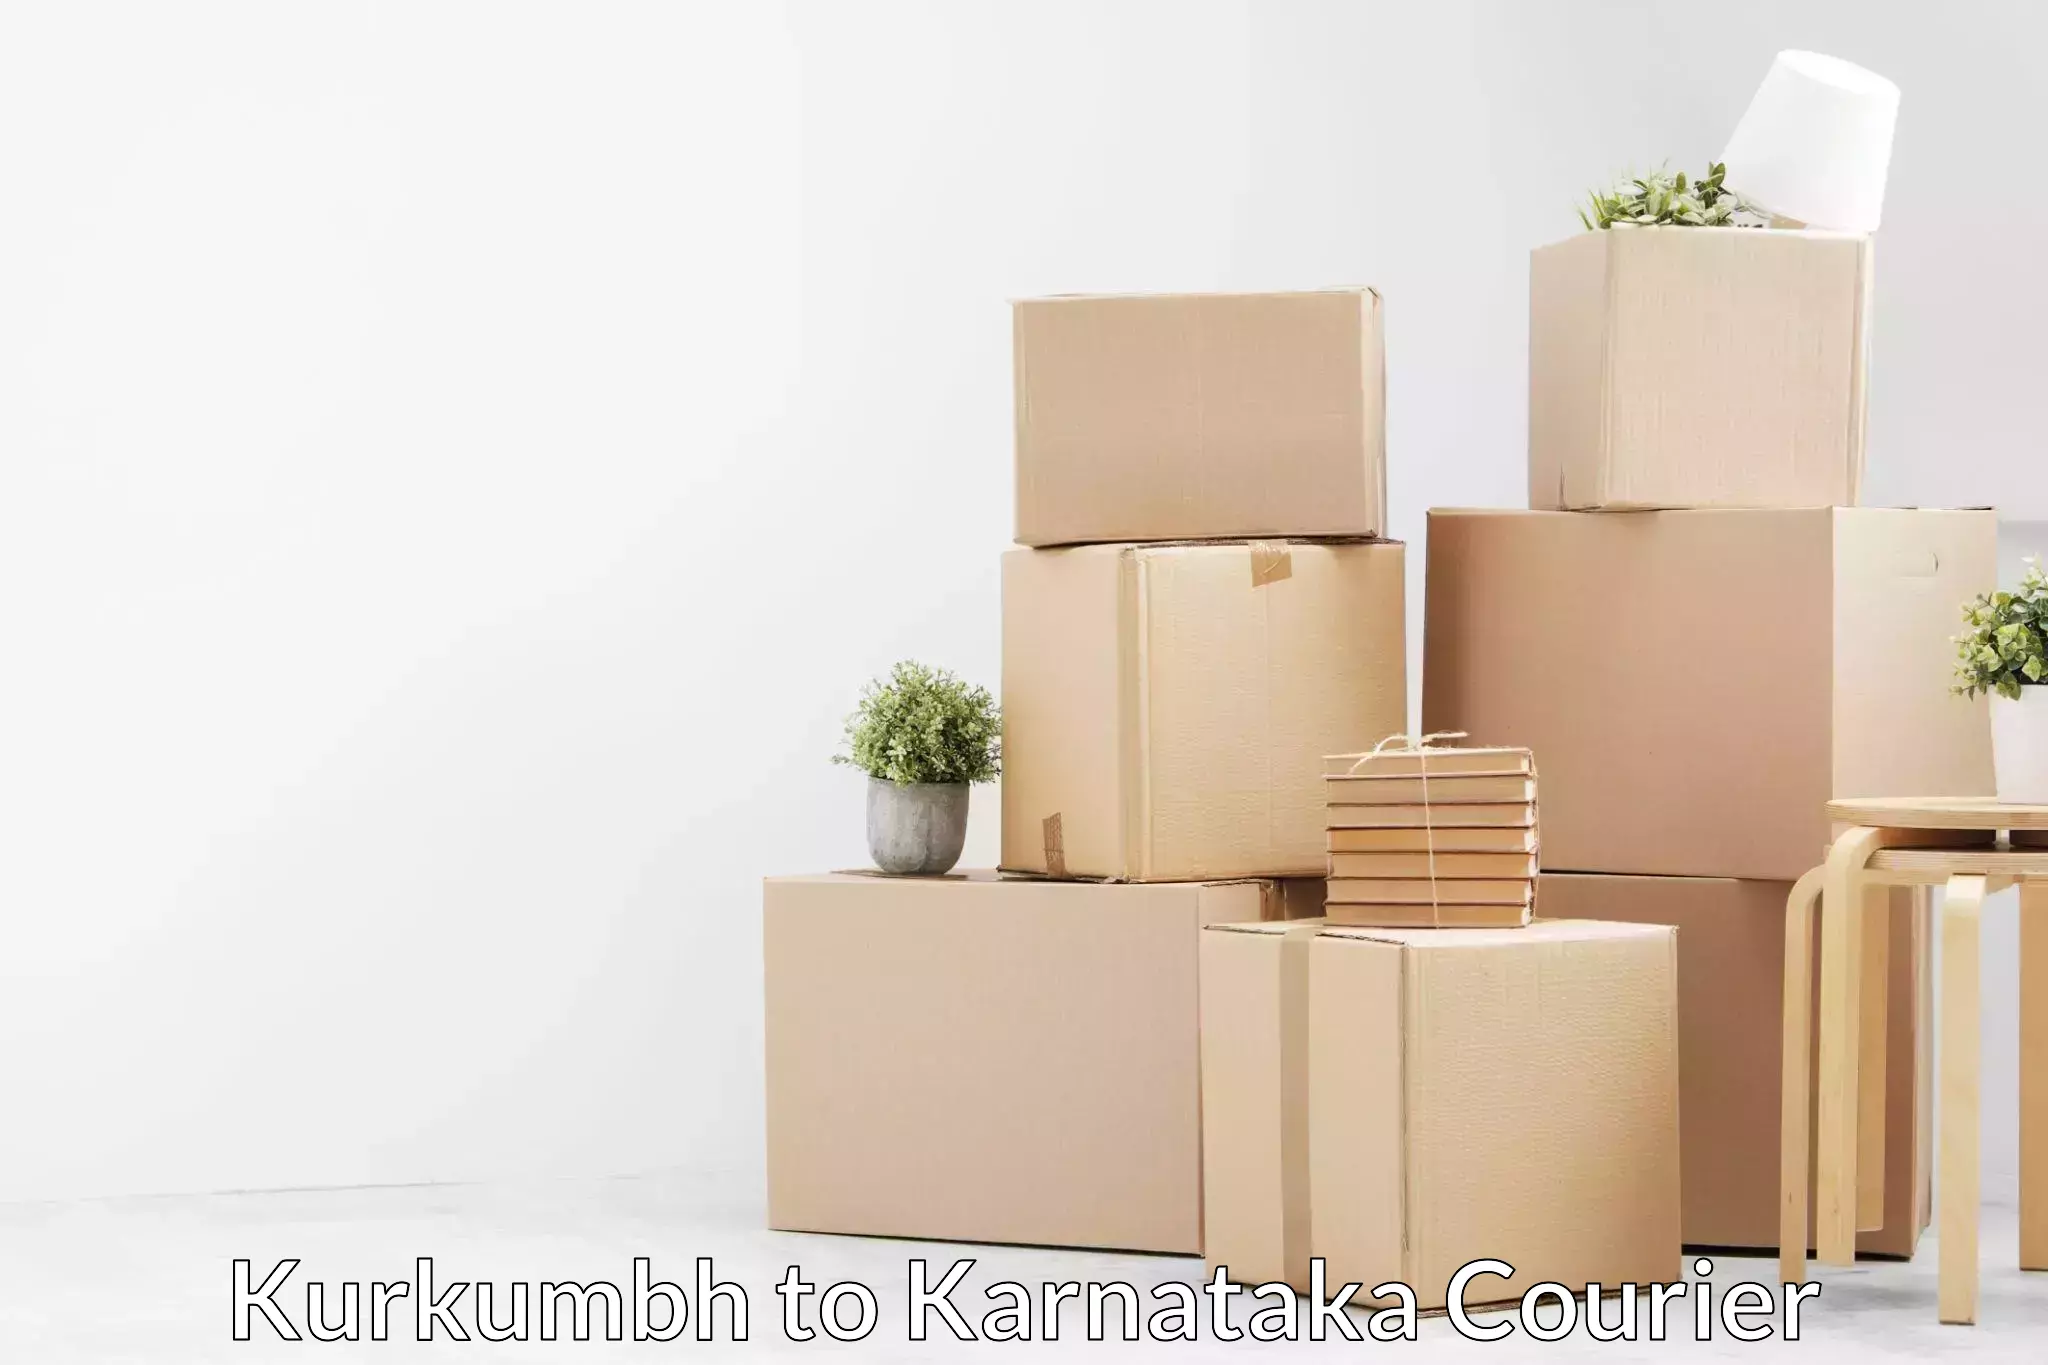 Efficient relocation services Kurkumbh to Karnataka